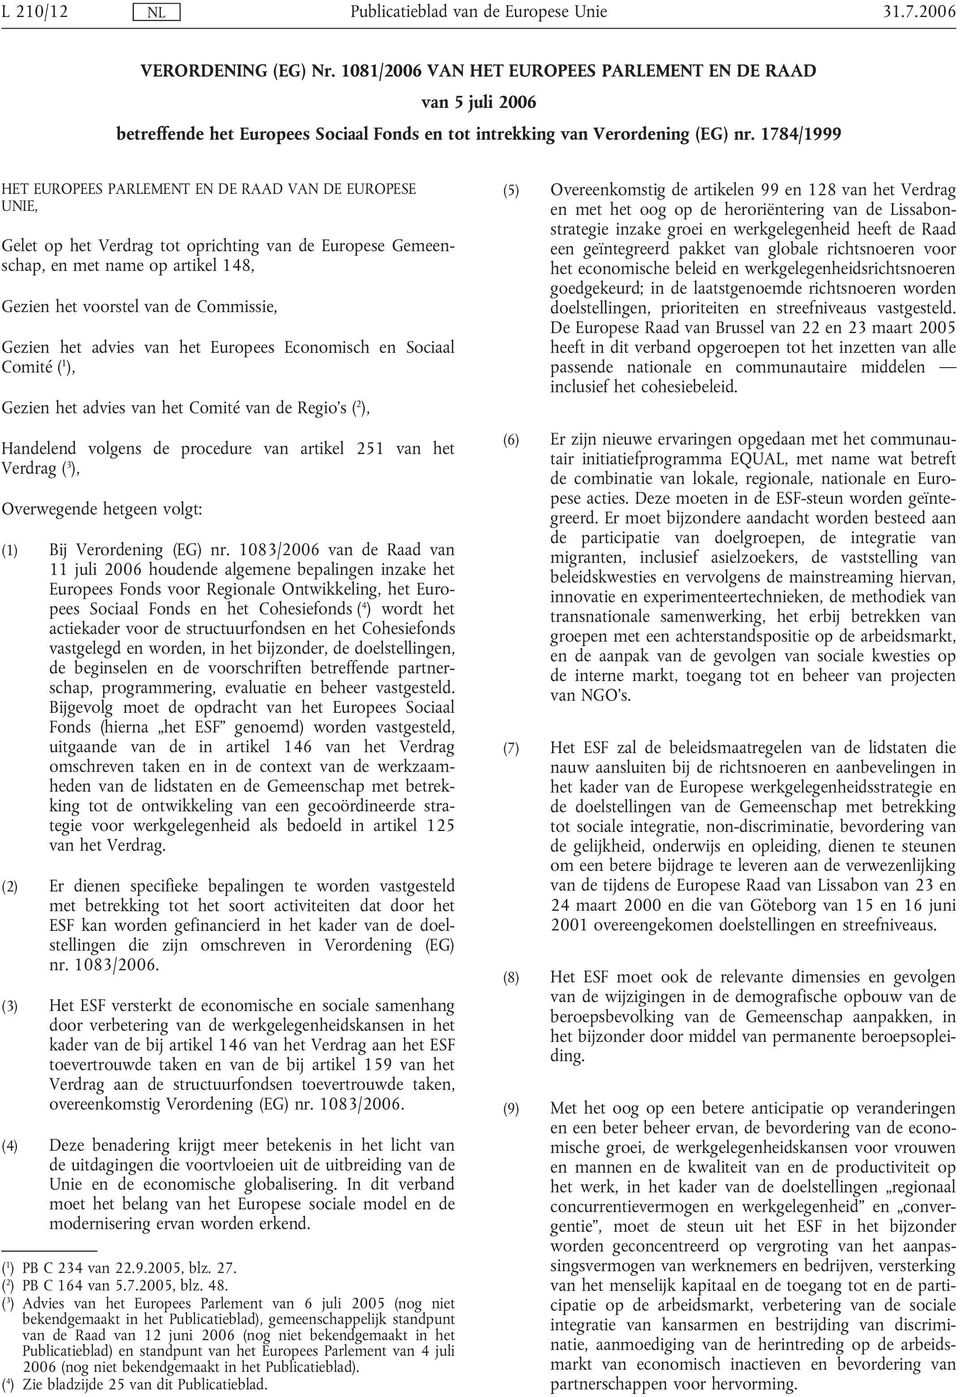 Gezien het advies van het Europees Economisch en Sociaal Comité ( 1 ), Gezien het advies van het Comité van de Regio's ( 2 ), Handelend volgens de procedure van artikel 251 van het Verdrag ( 3 ),